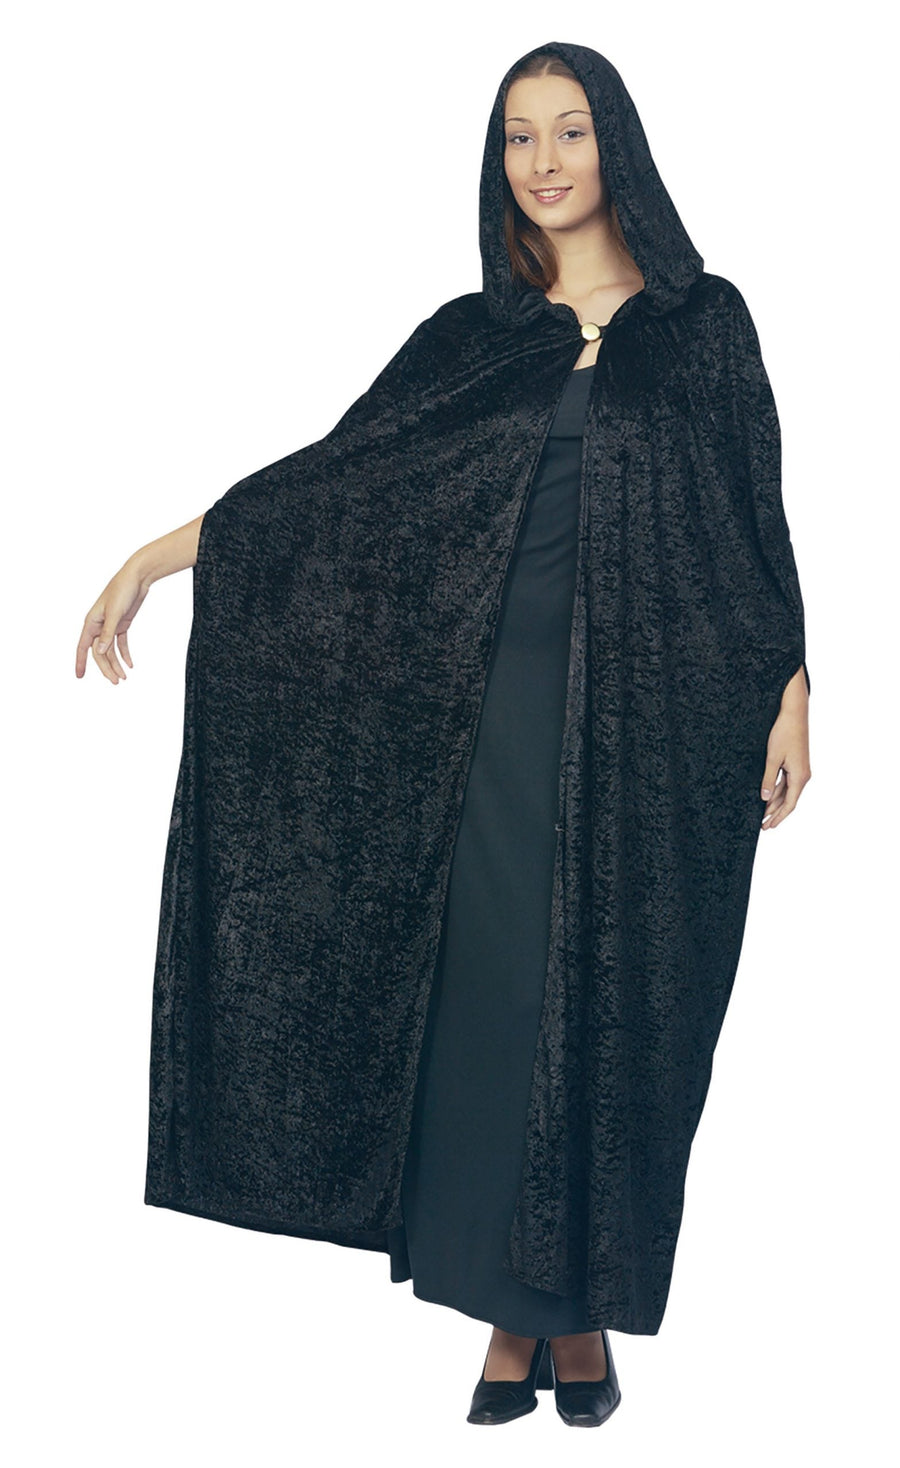 Womens Gothic Hooded Velvet Cloak Black Adult Costume Female Halloween_1